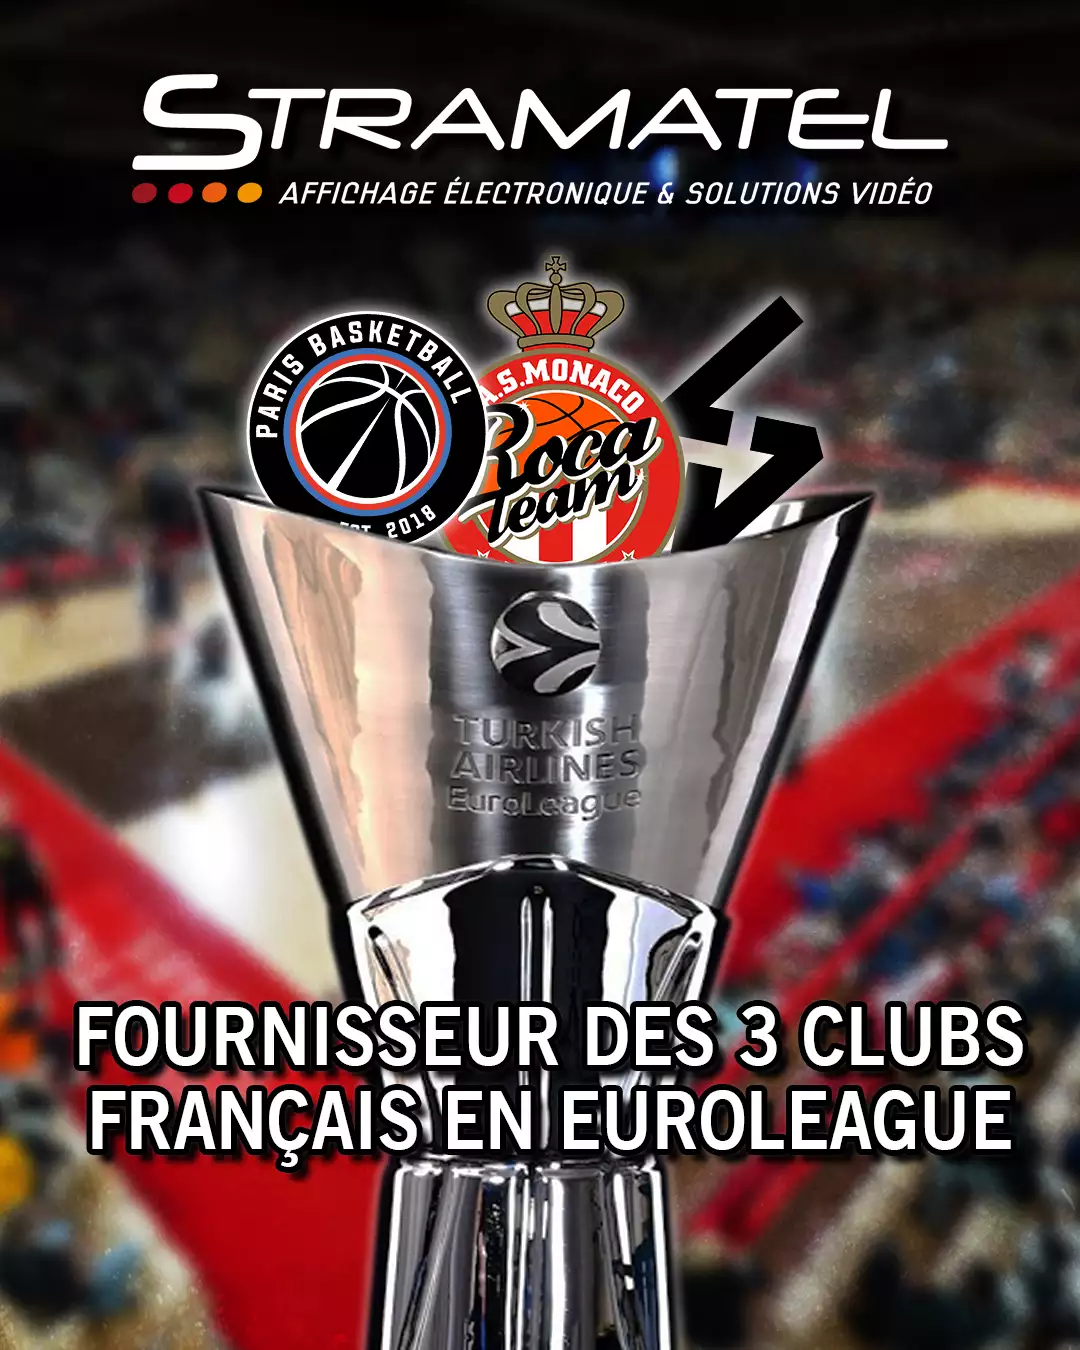 Stramatel équipe les 3 clubs français en Euroleague